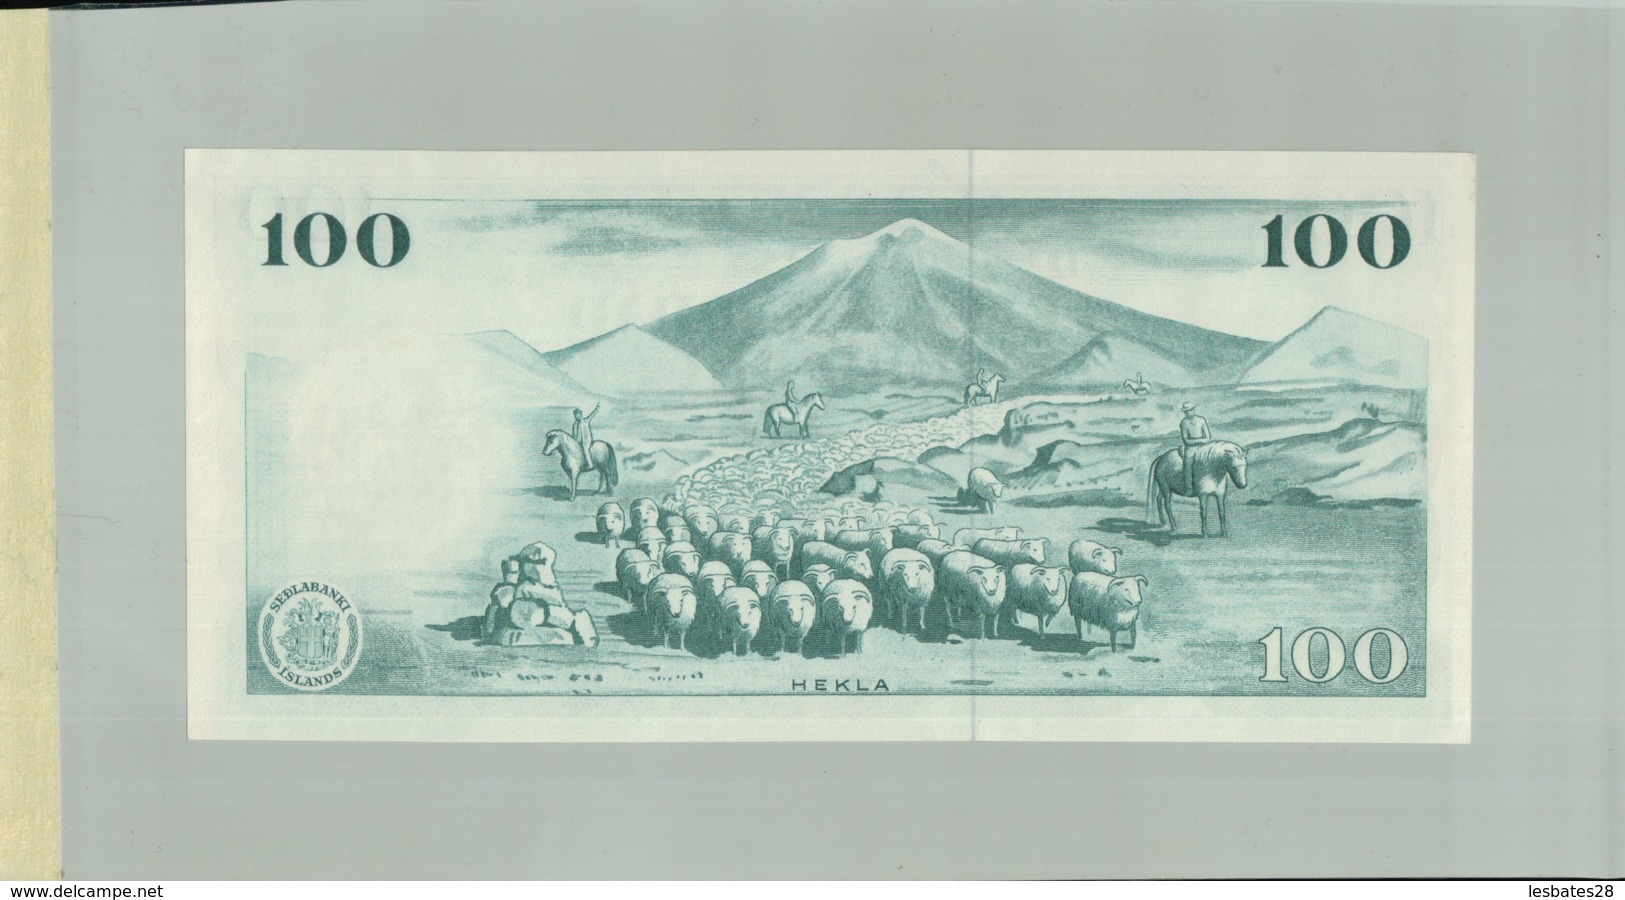 Billet De Banque Sedlabanki  Island Iceland, 100 Kronur, 1961 DEC 2019 Gerar - Islande